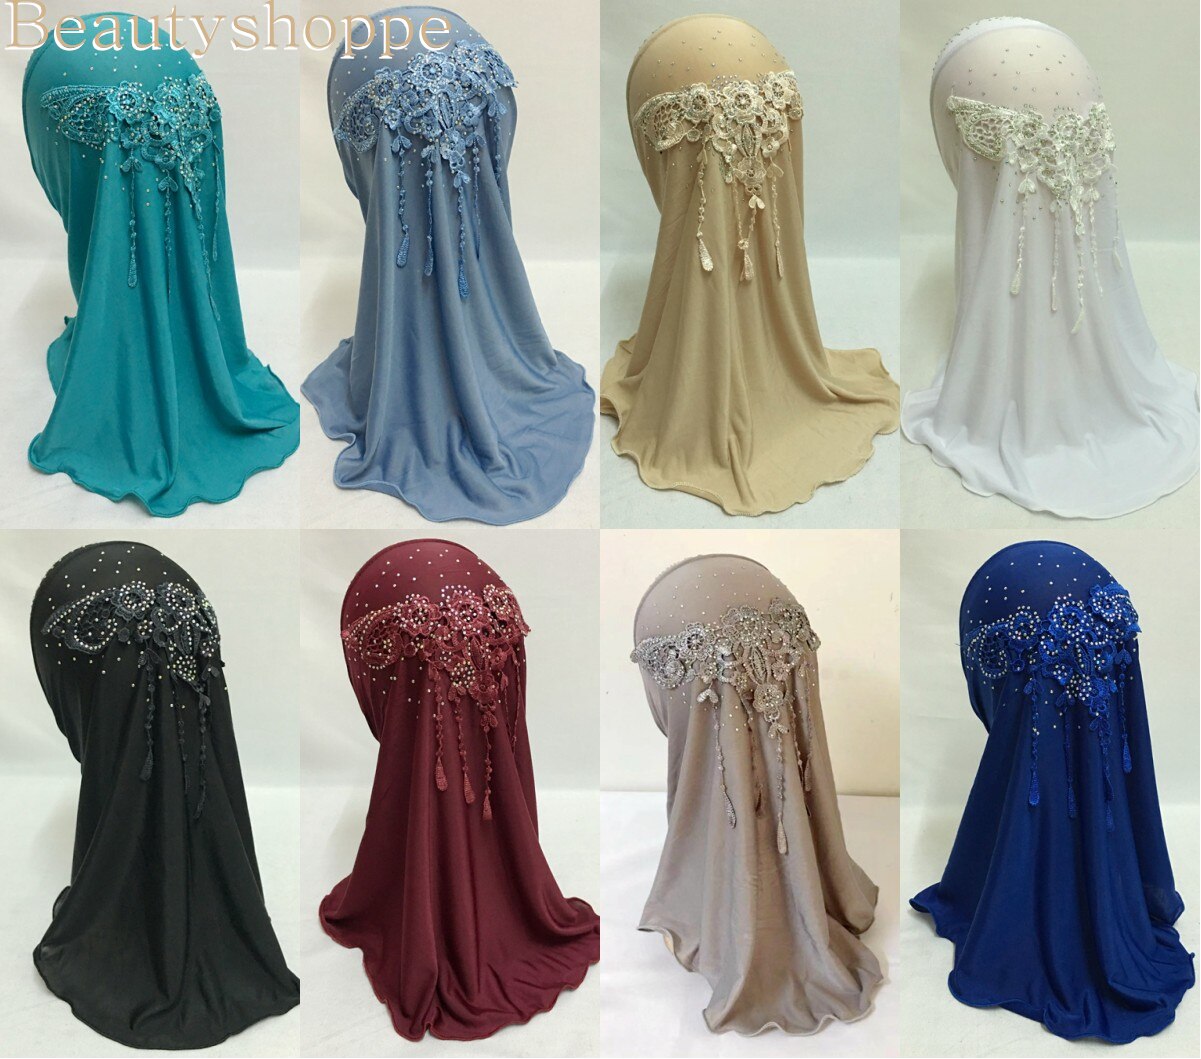 Hijab pour filles musulmanes avec perceuse lumineuse, écharpe islamique châle, magnifique, pour filles de 3 à 8 ans